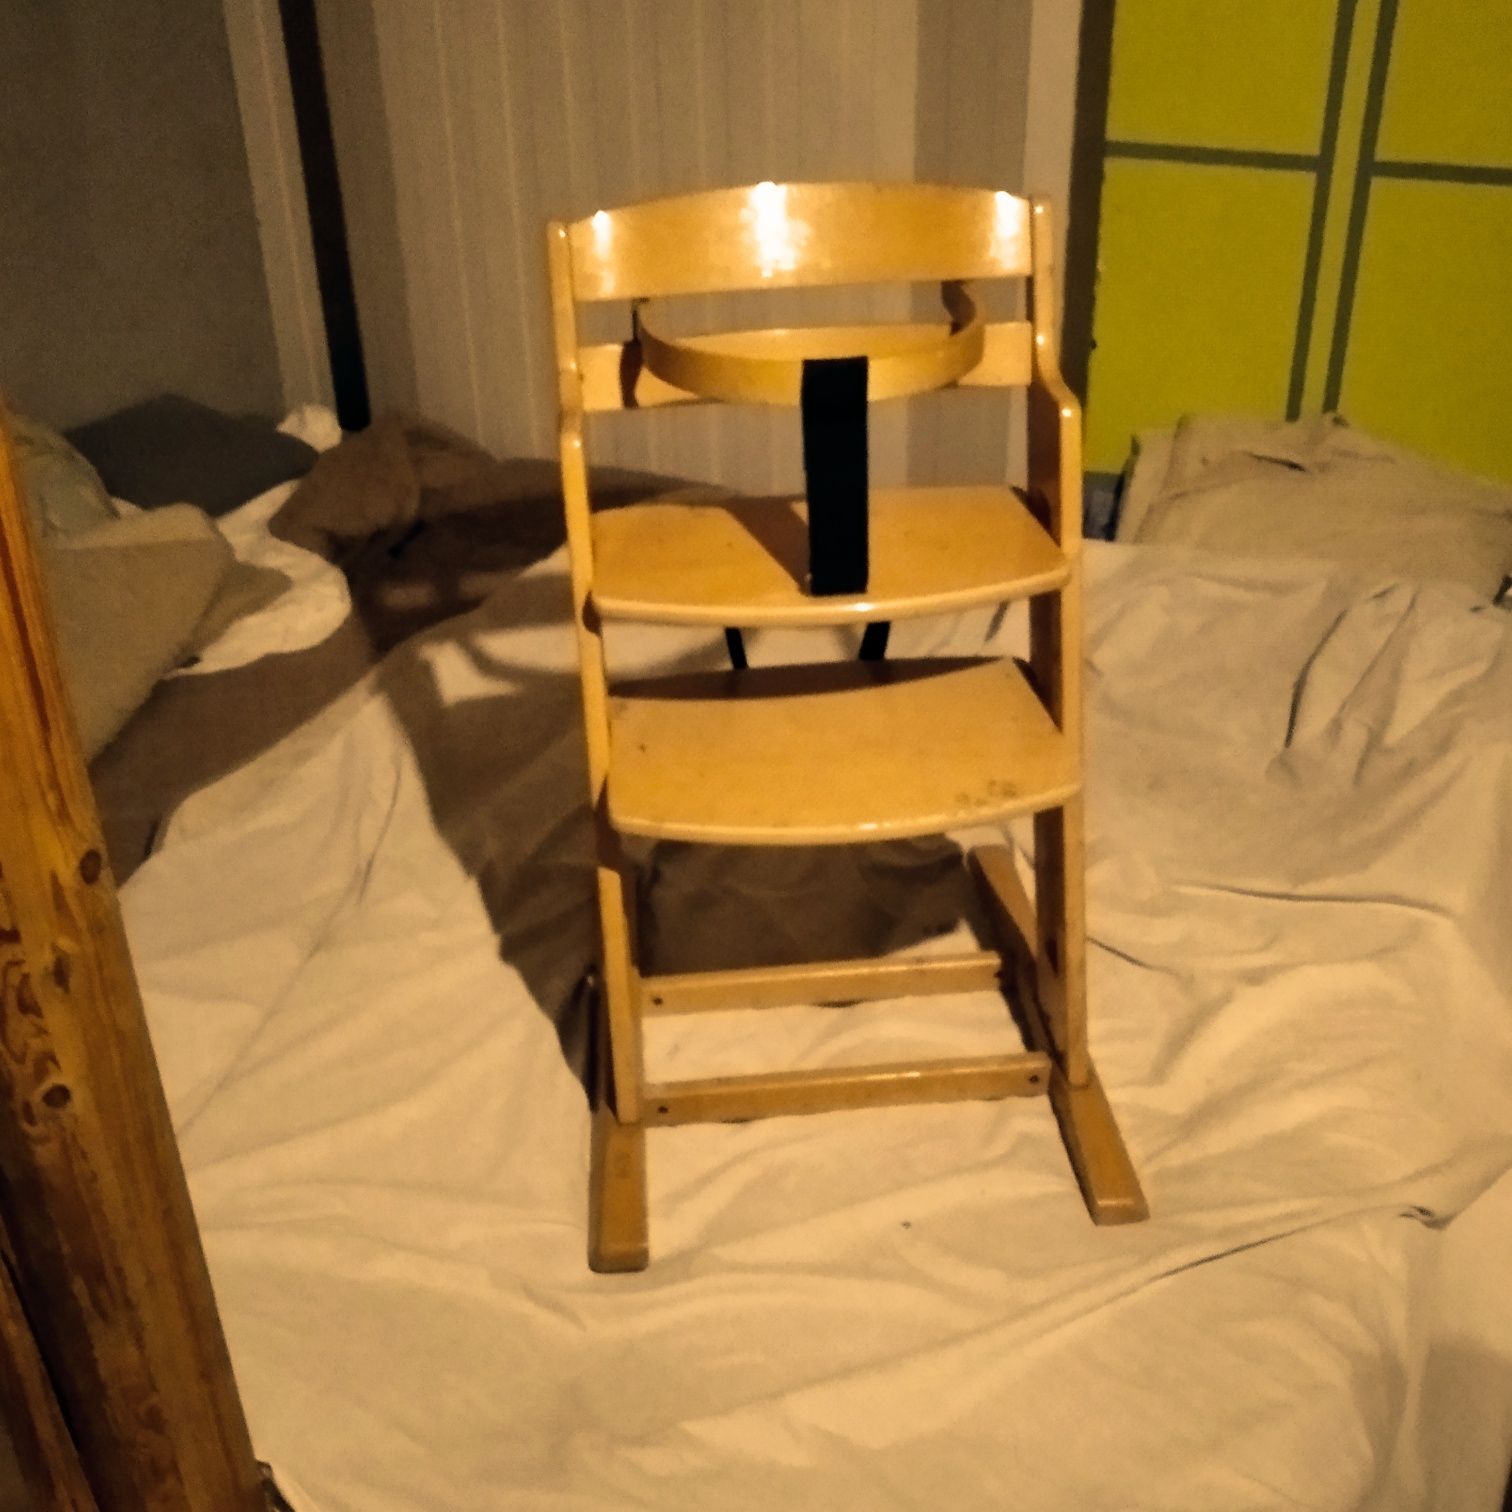 Krzesełko dla dziecka